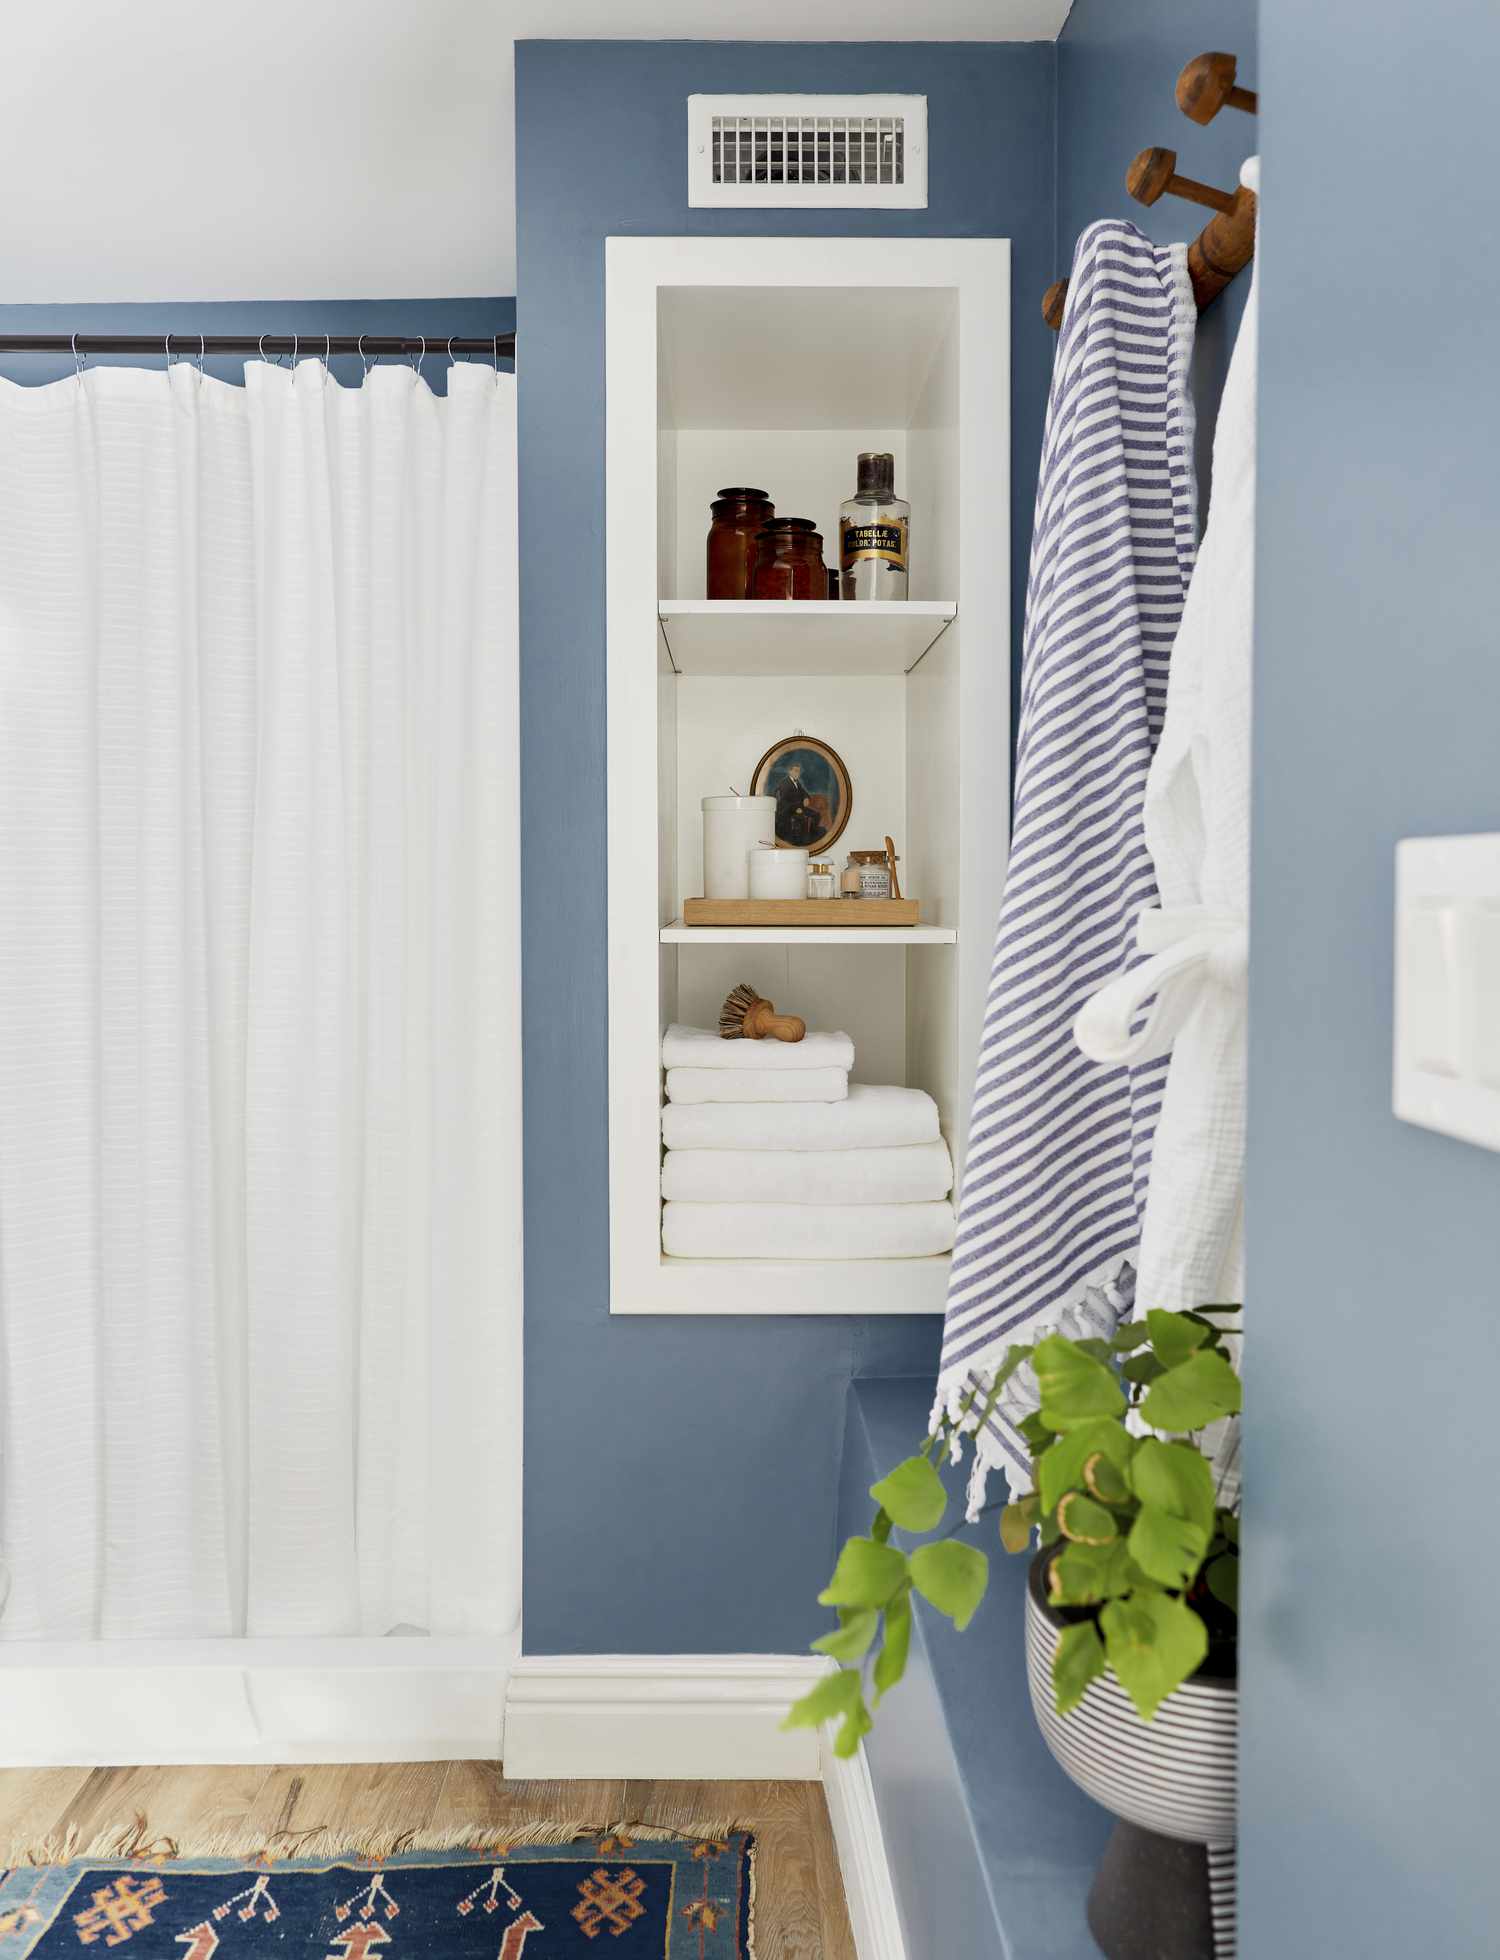 Um banheiro pintado em um tom azul suave tem uma cortina de chuveiro branca